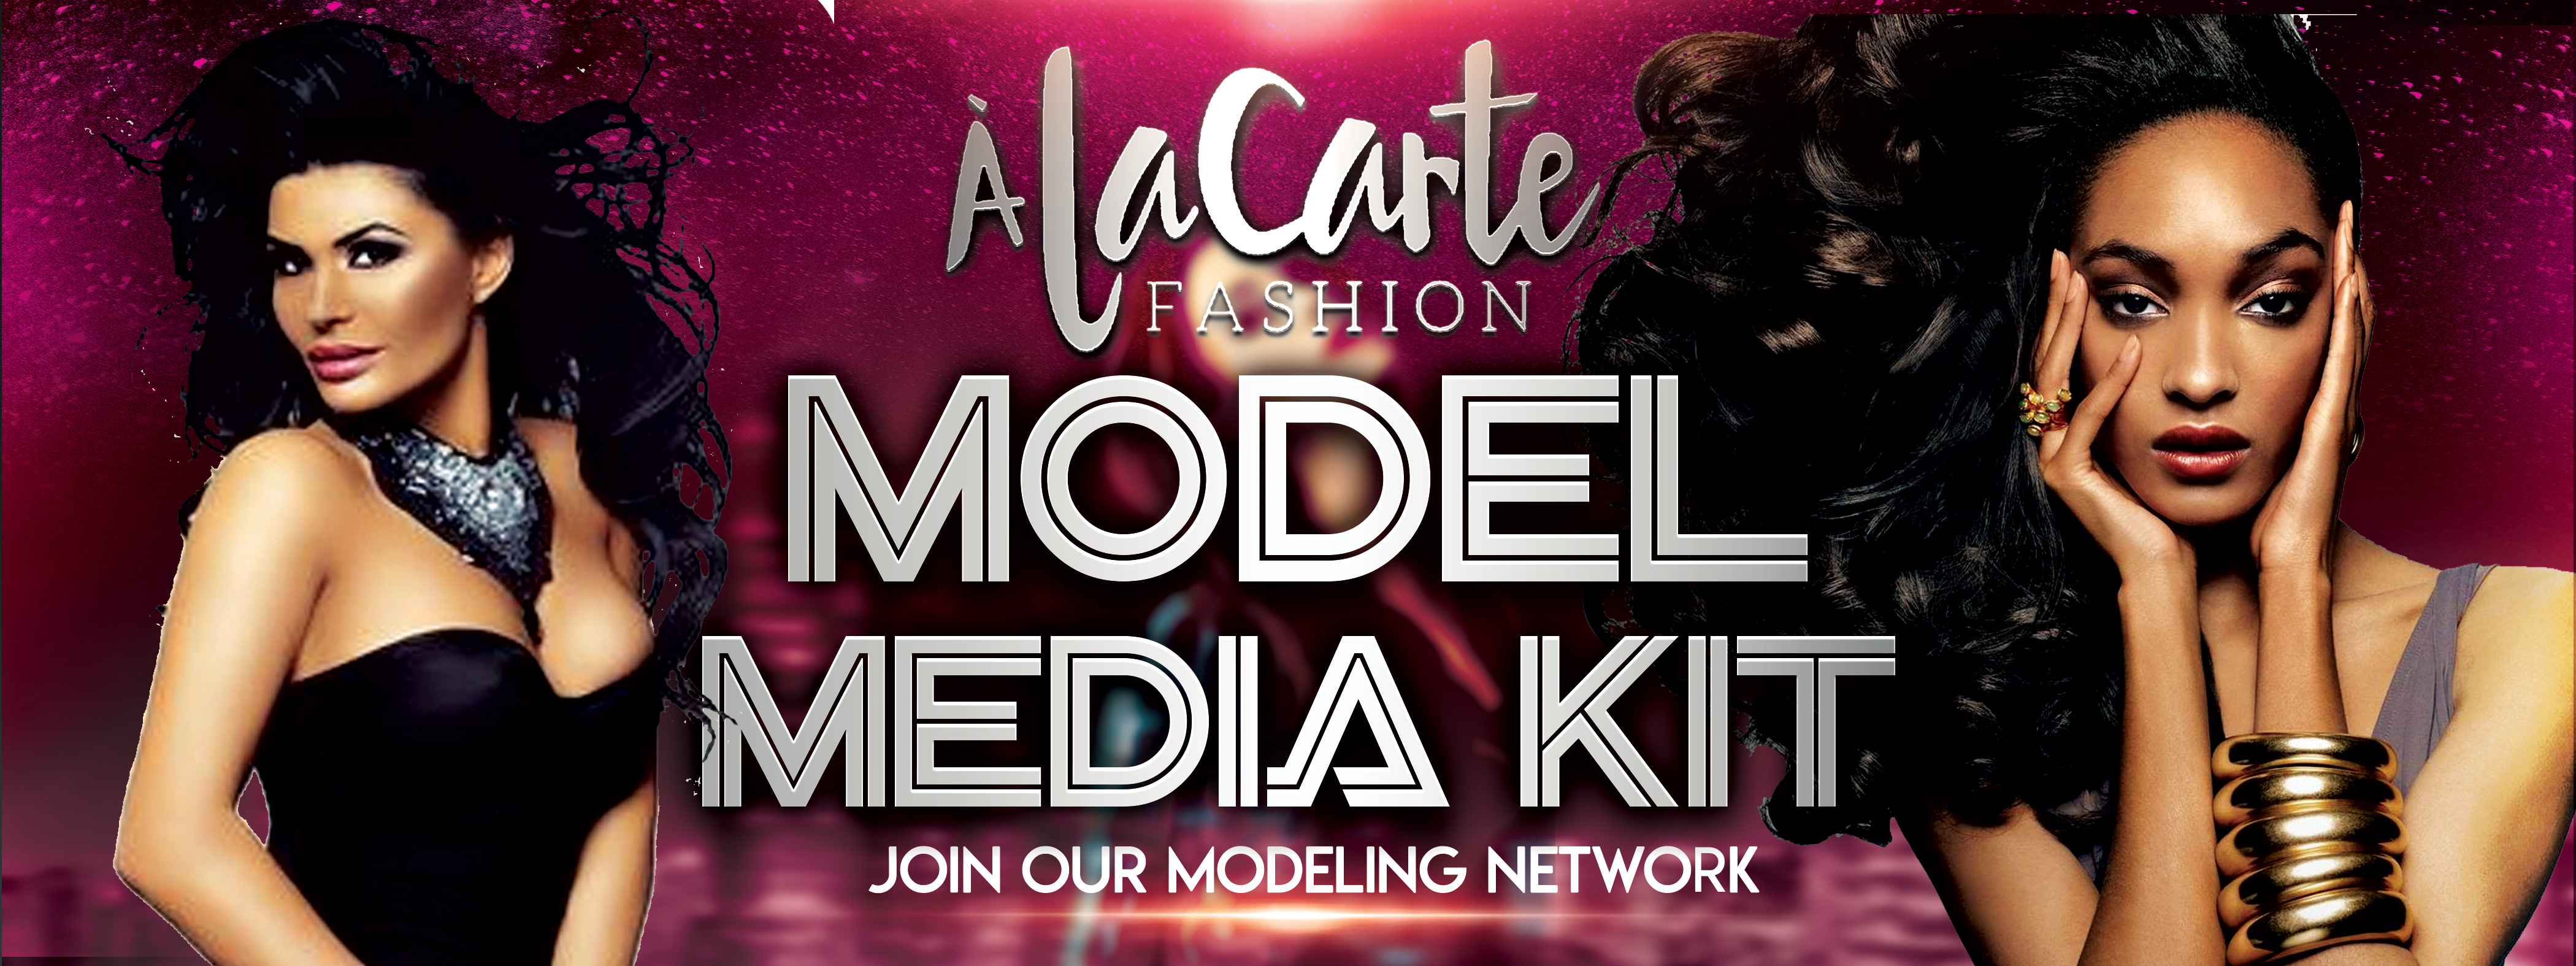 Model Media Kit